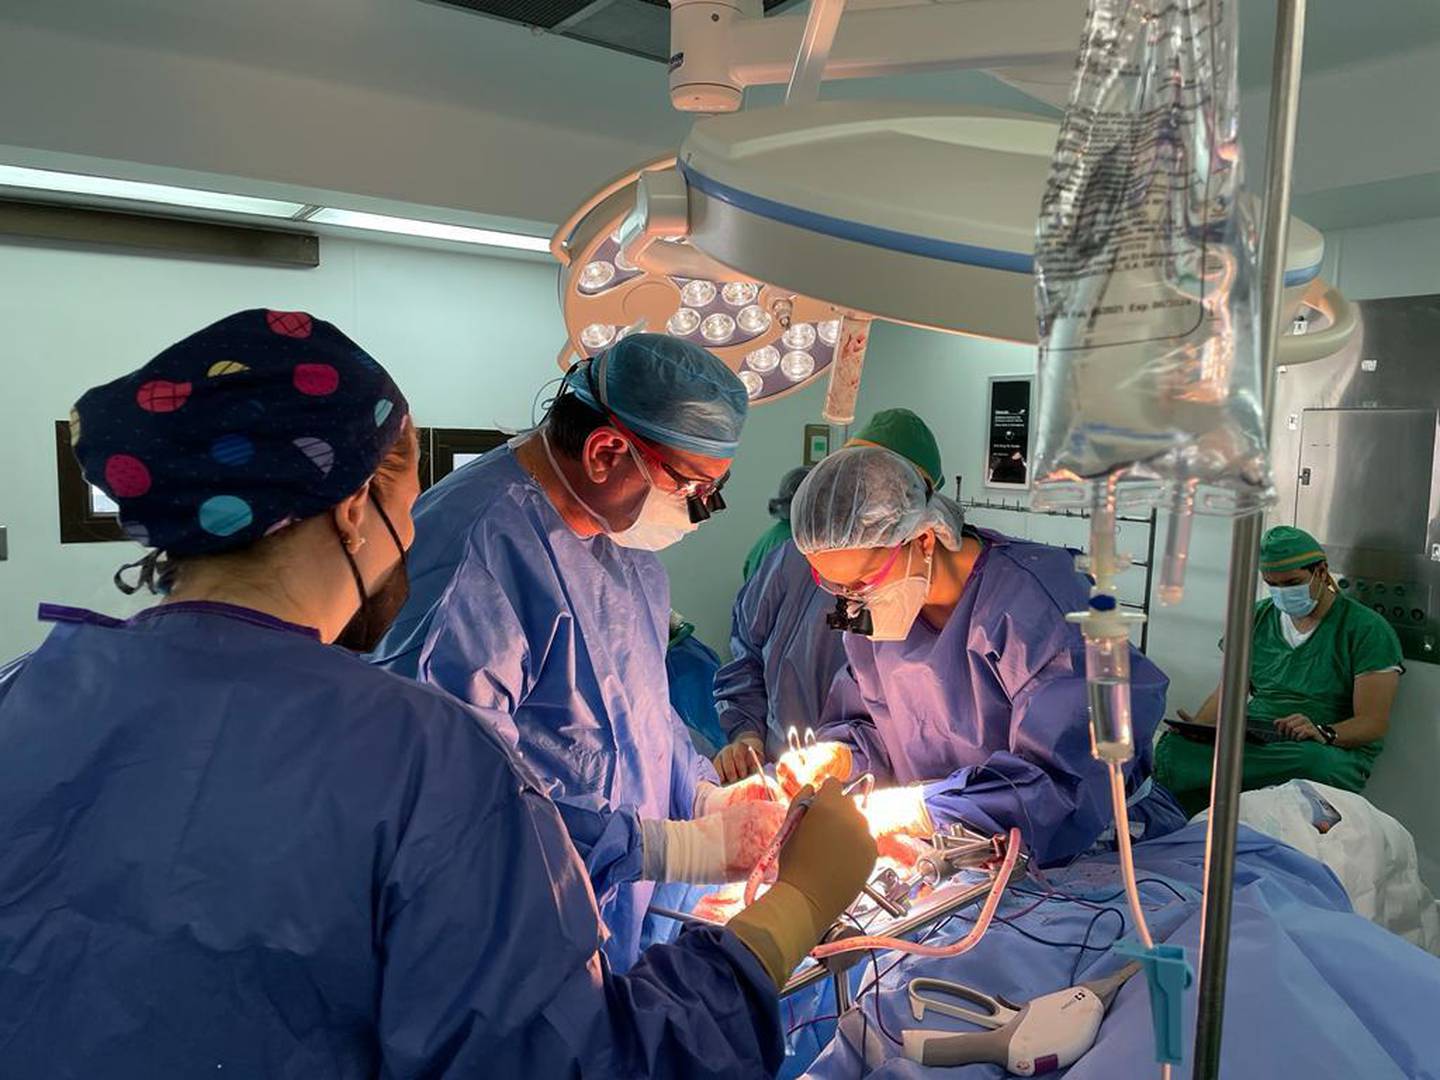 El primer trasplante de riñón con donante vivo realizado en el hospital Maximiliano Peralta Jiménez el pasado 13 de diciembre abre una nueva etapa en este tipo de intervención en Cartago